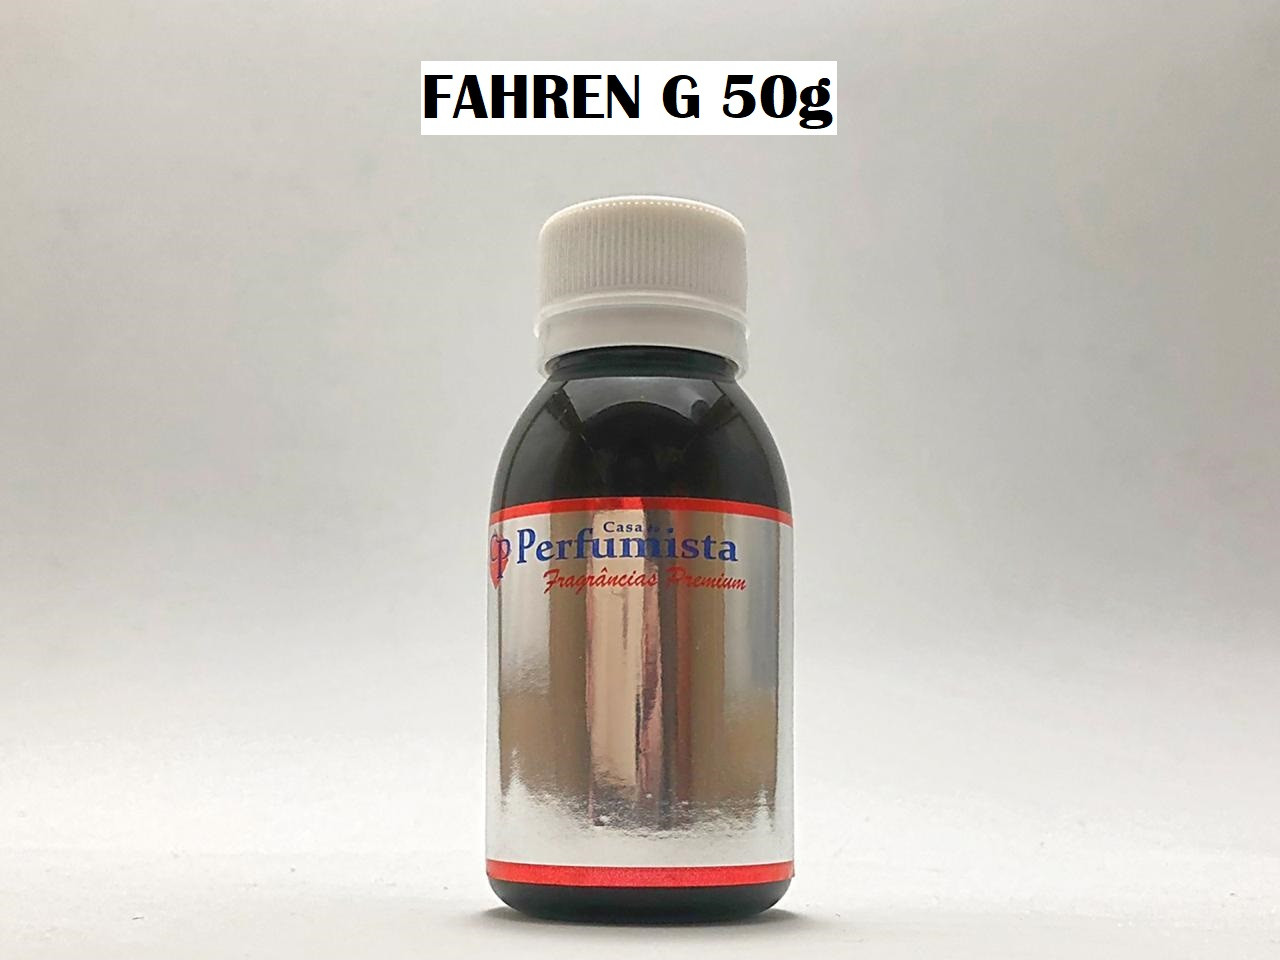 FAHREN G 50g - Inspiração: Farenheit Masculino